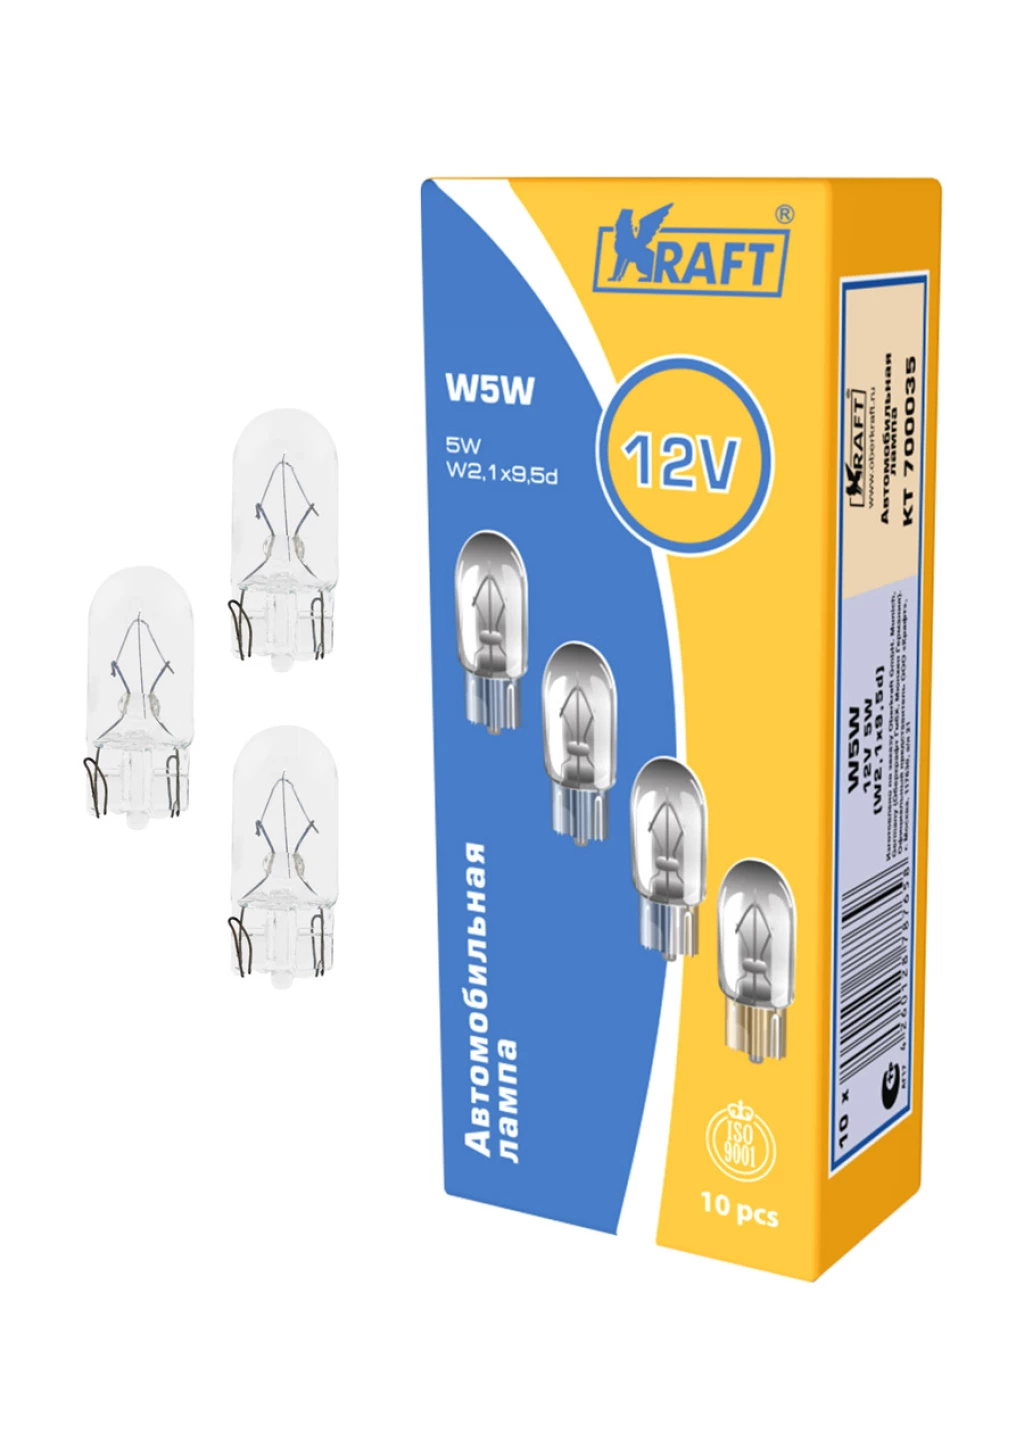 Лампа галогенная Kraft W5W (W2.1x9.5d) 12V 5W, KT 700035, 1 шт